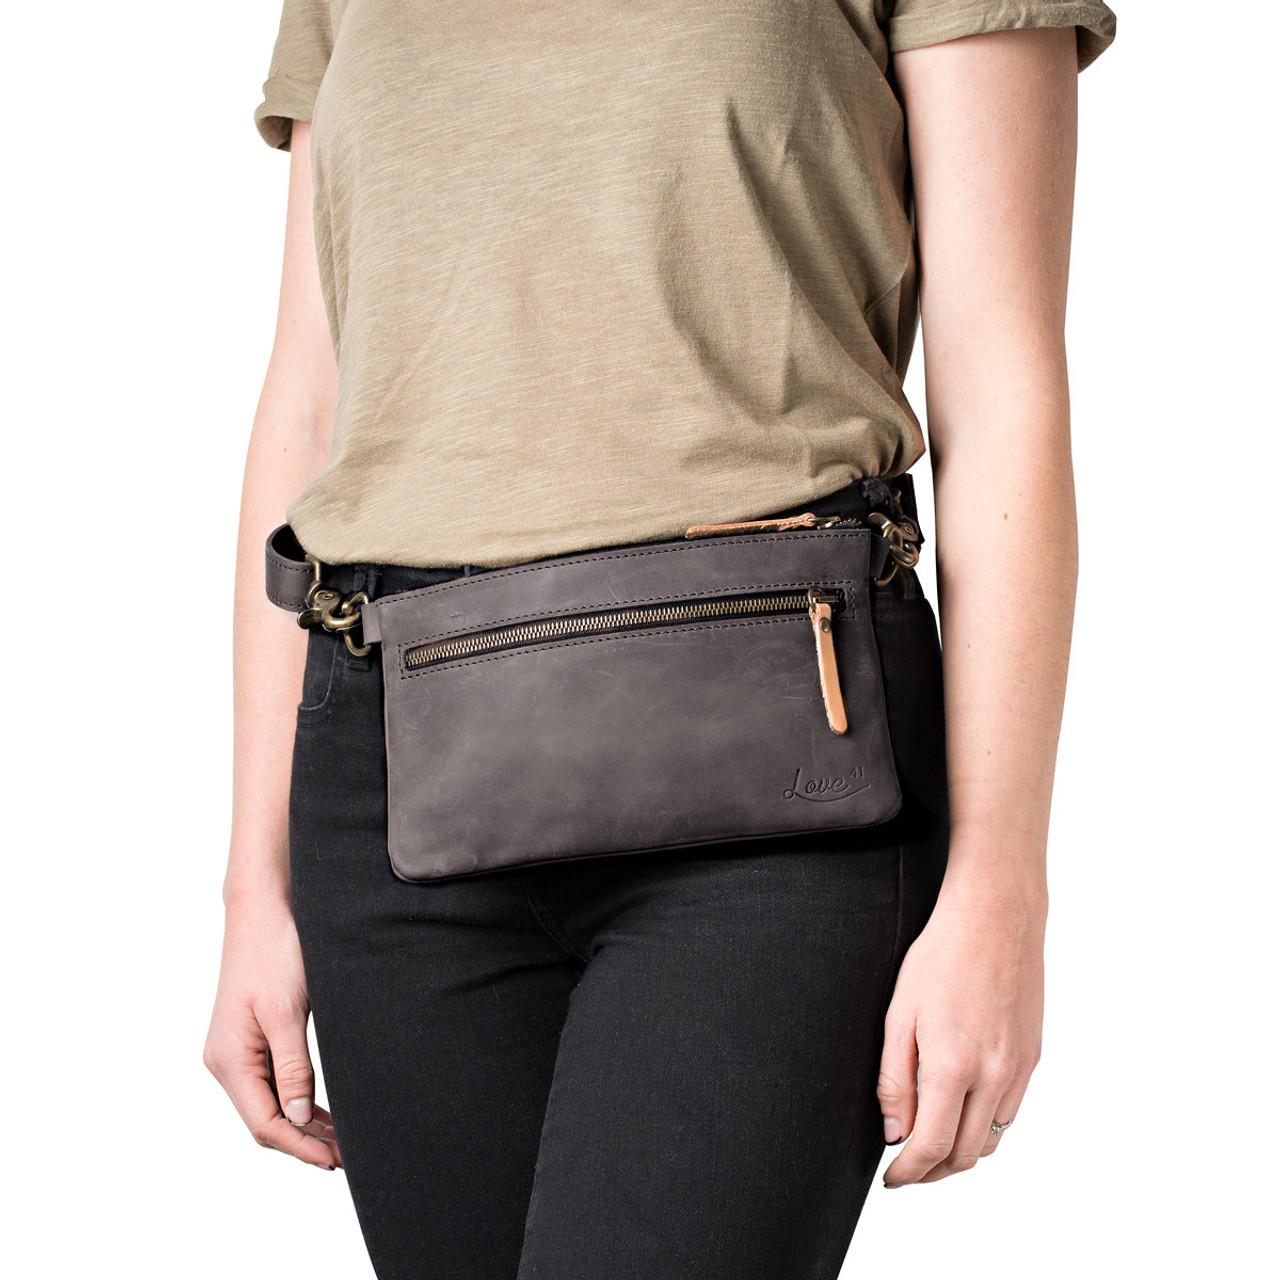 ili Slim Leather Belt Bag  Leather belt bag, Bags, Belt bag